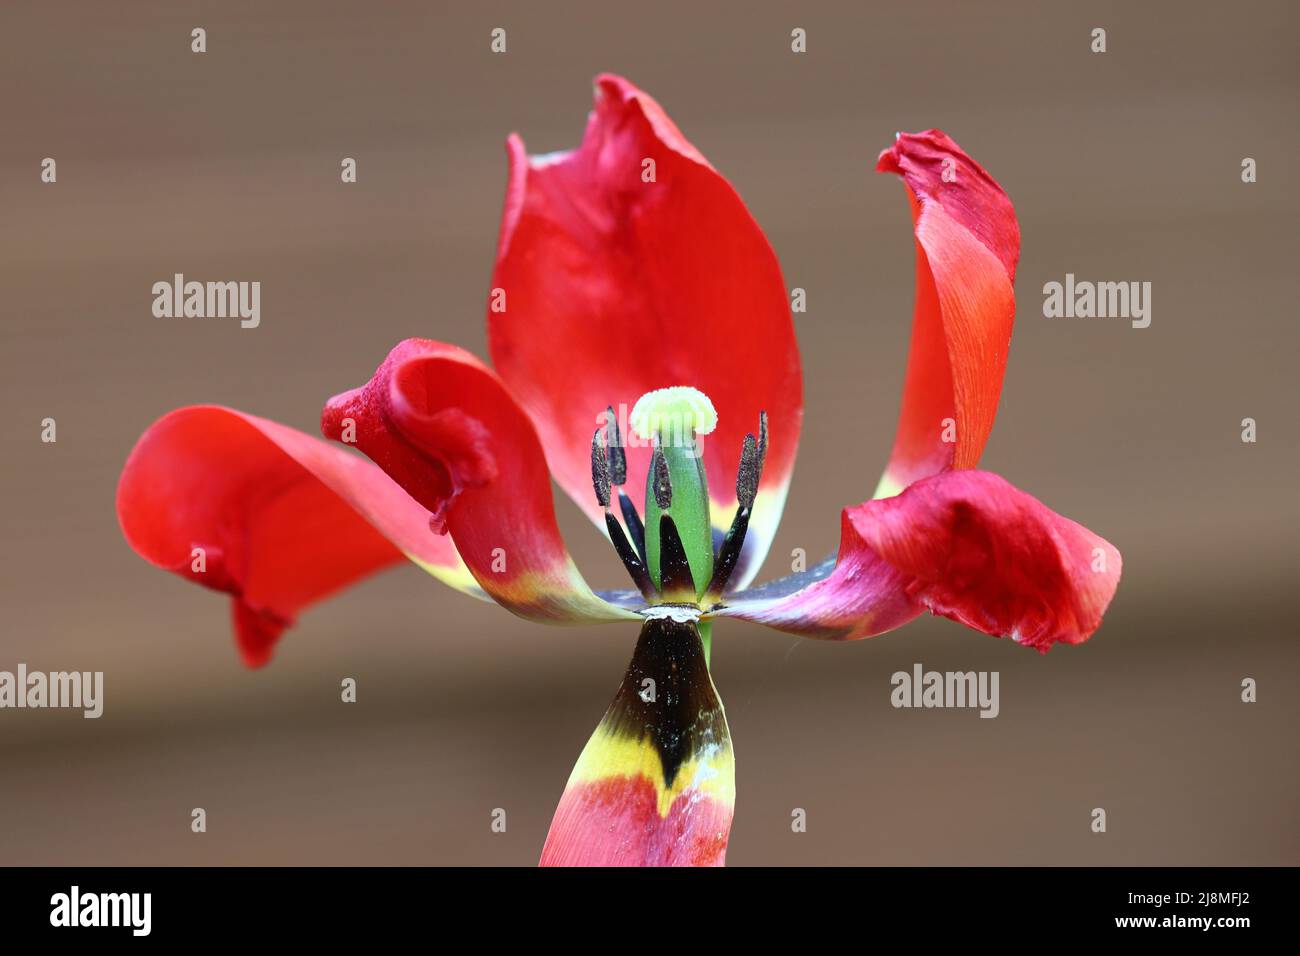 gros plan d'une tulipe rouge en fondu avec vue sur le noeud du fruit et les étamines, vue latérale, foyer sélectif Banque D'Images